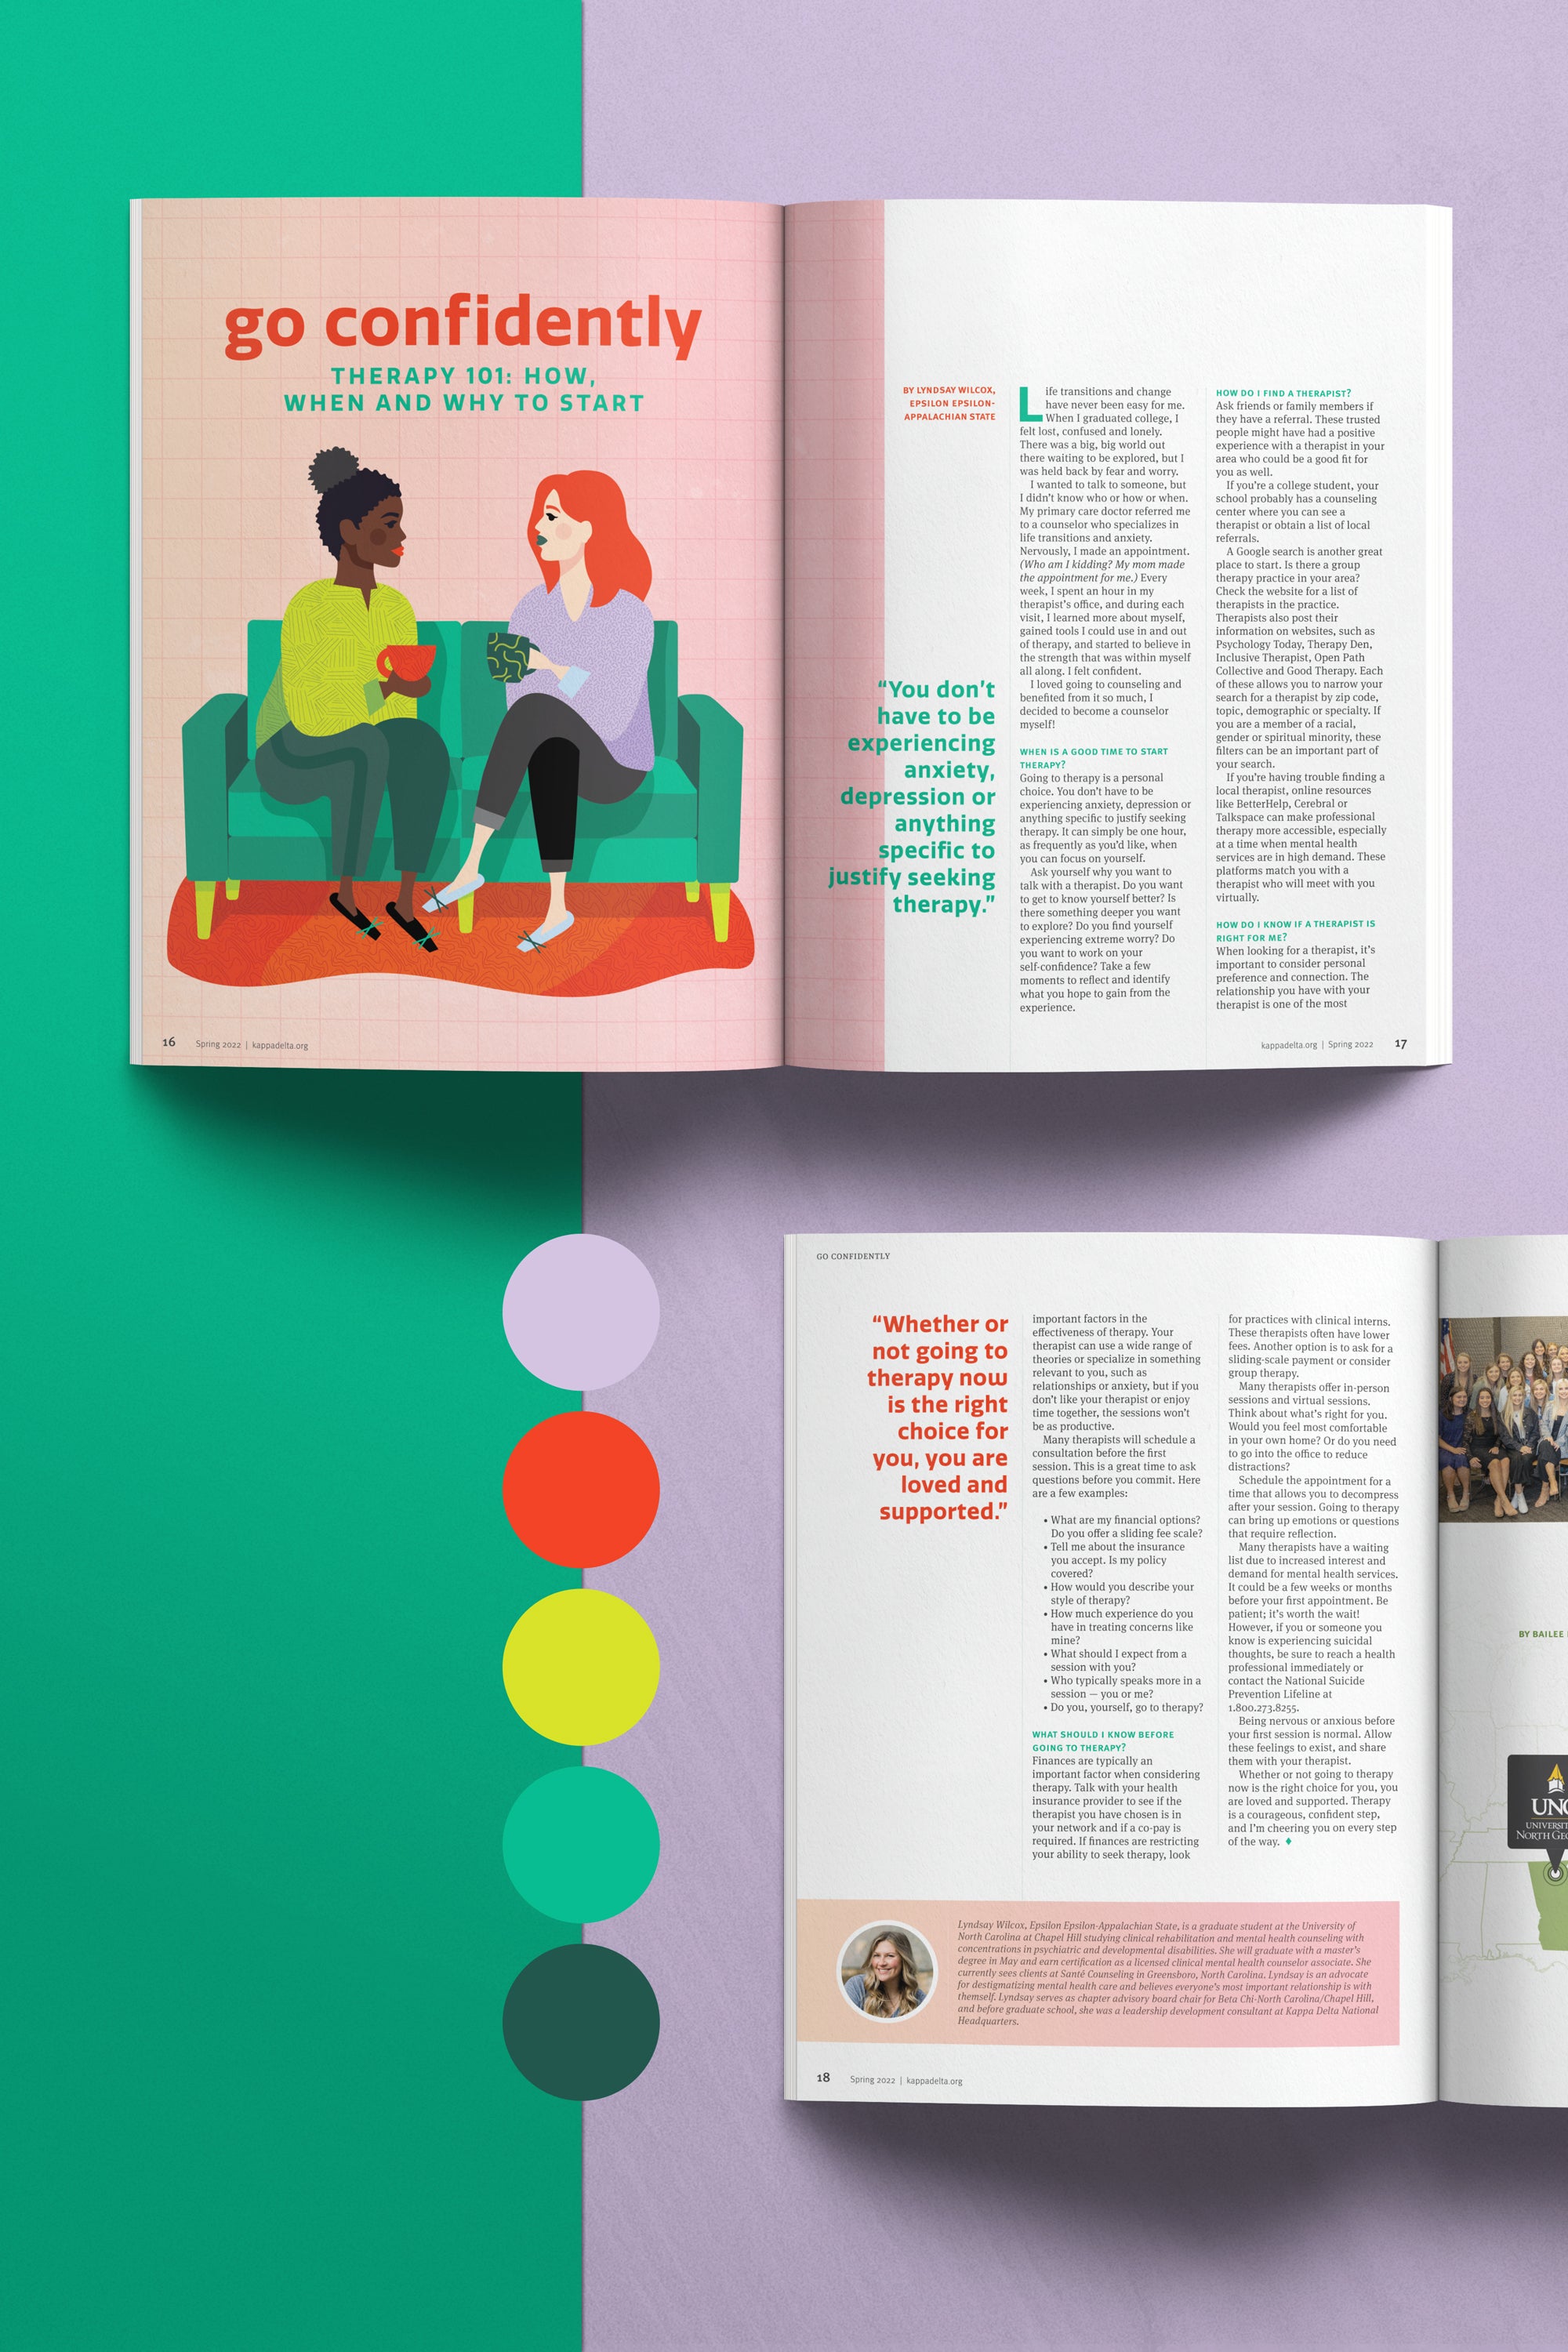 women in therapy session editorial illustration magazine design spread